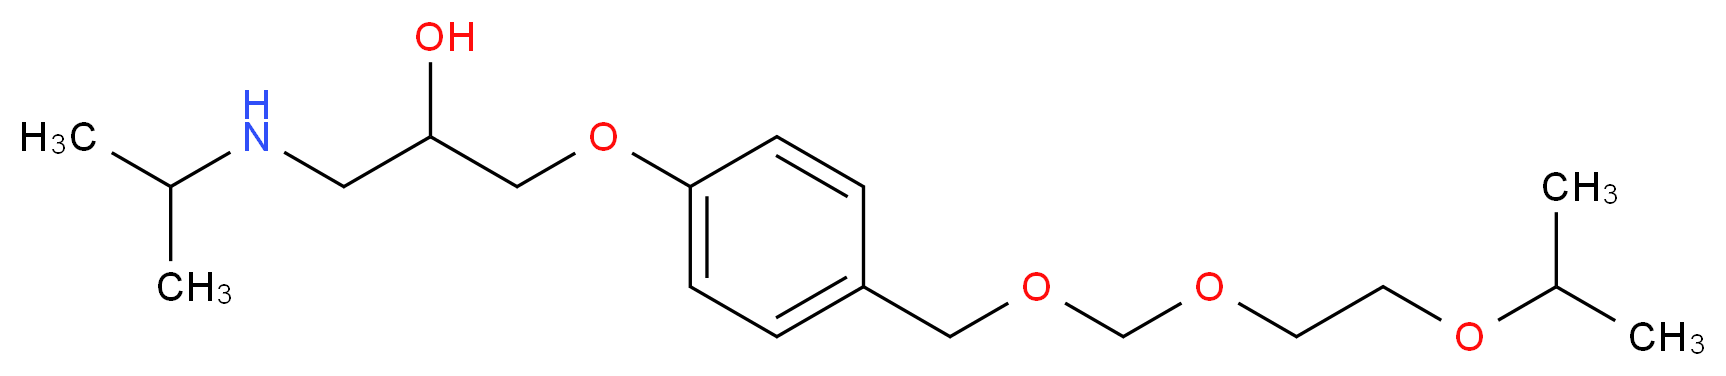 rac Des(isopropoxyethyl)-2-isopropoxyethoxymethyl Bisoprolol_Molecular_structure_CAS_1215342-36-1)